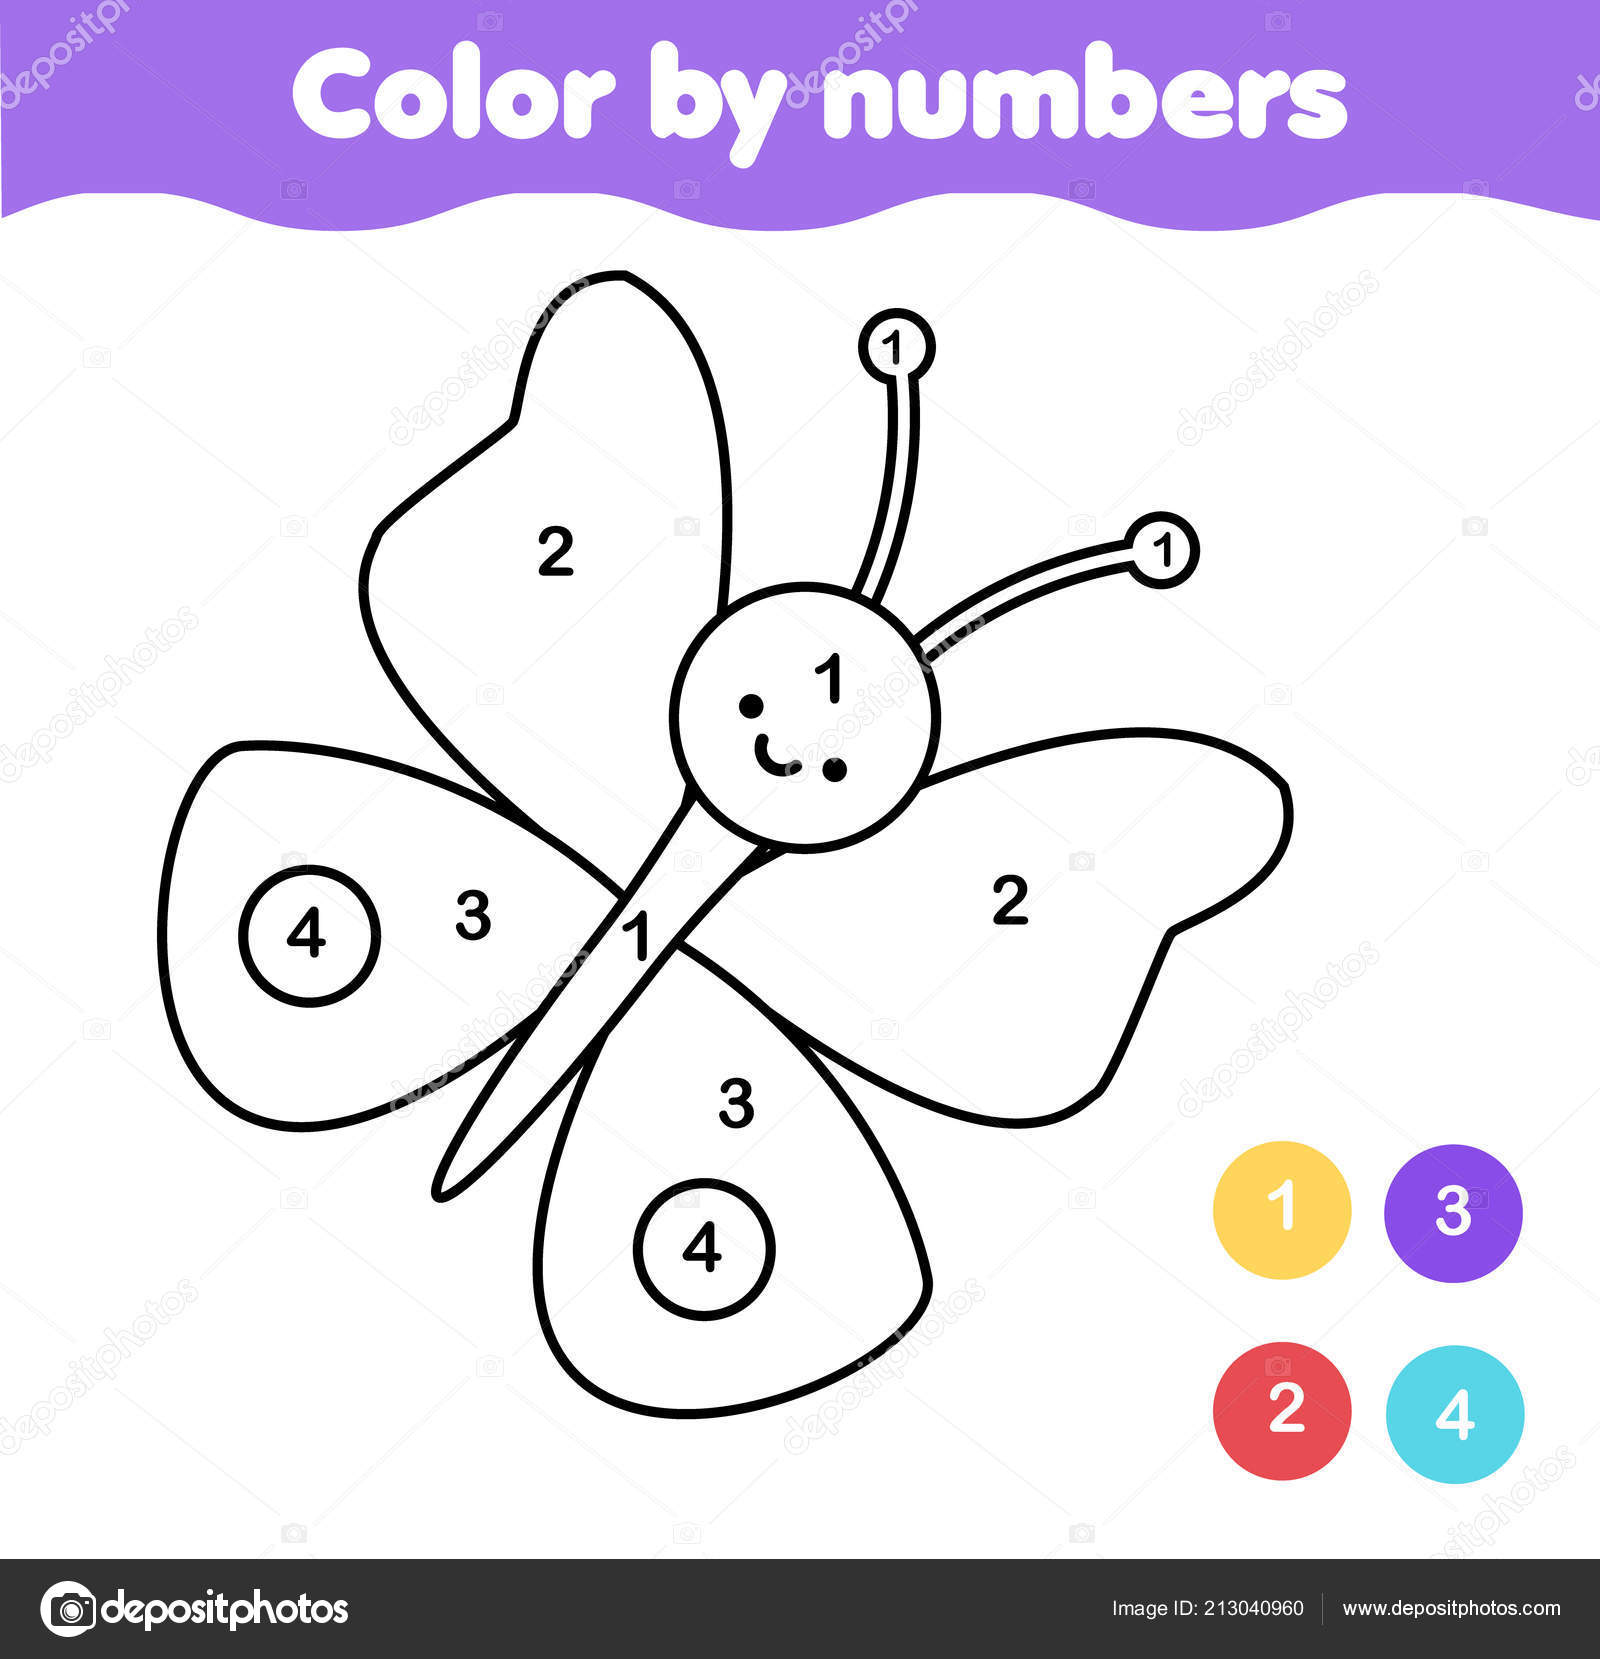 Blueberry coloring page vector folha de trabalho educacional colorida por  amostra jogo de pintura crianças pré-escolares